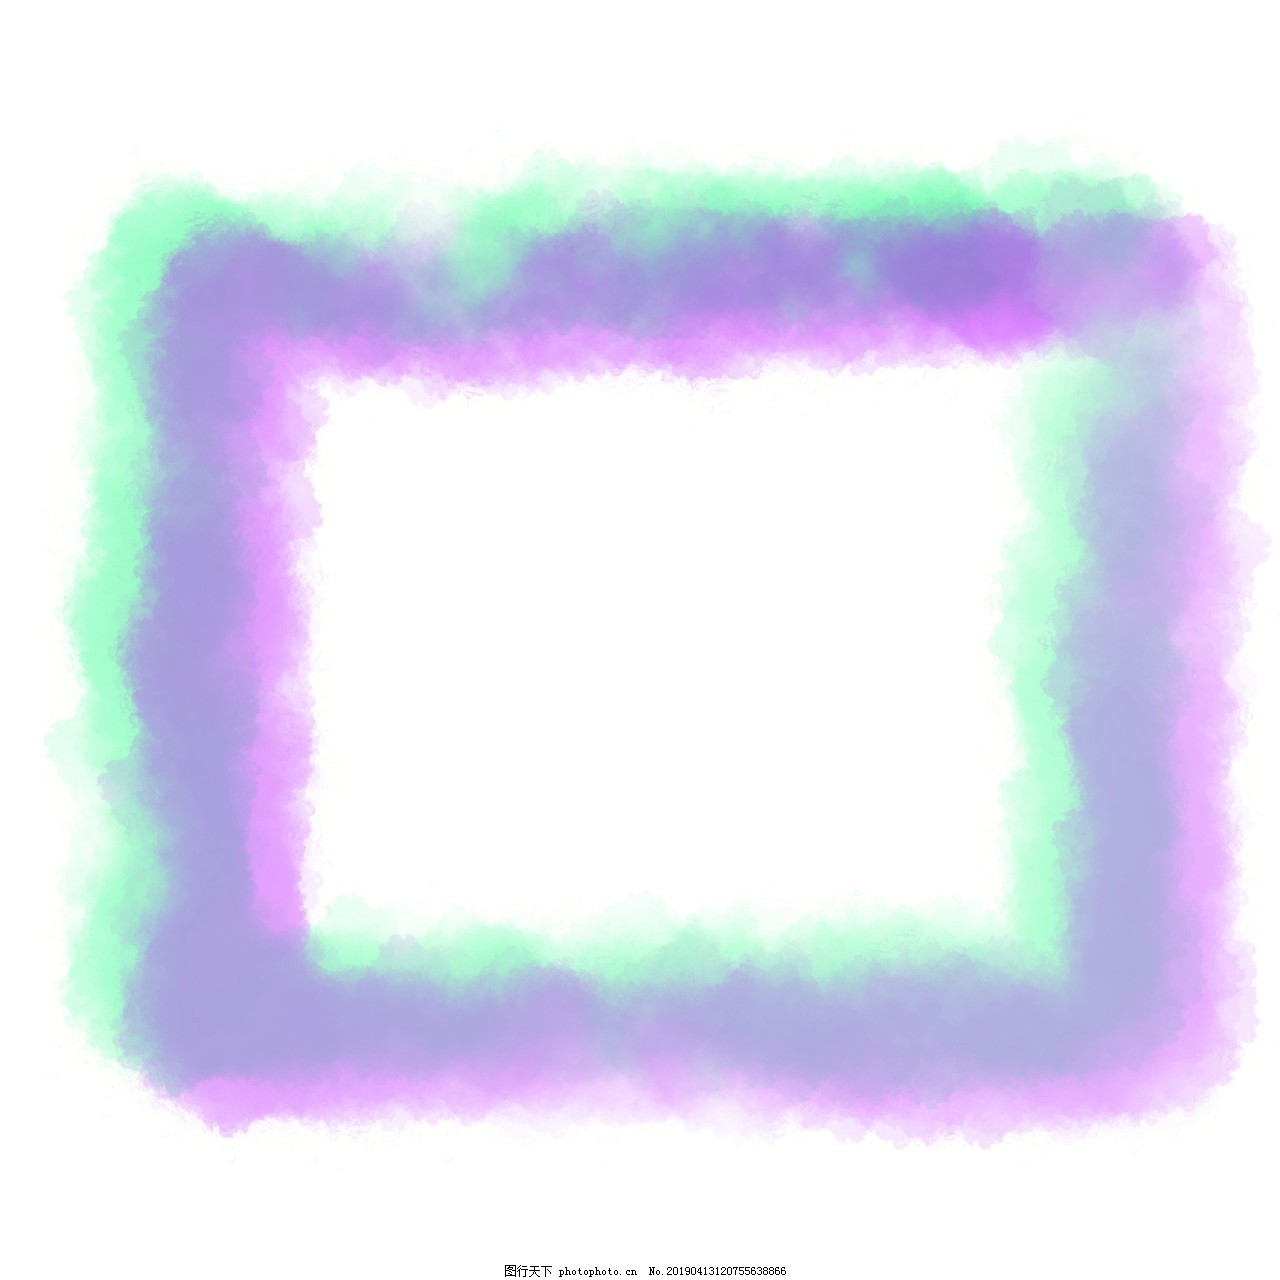 ‘~紫色水彩边框插画图片_纹理边框_平面创作元素-  ~’ 的图片